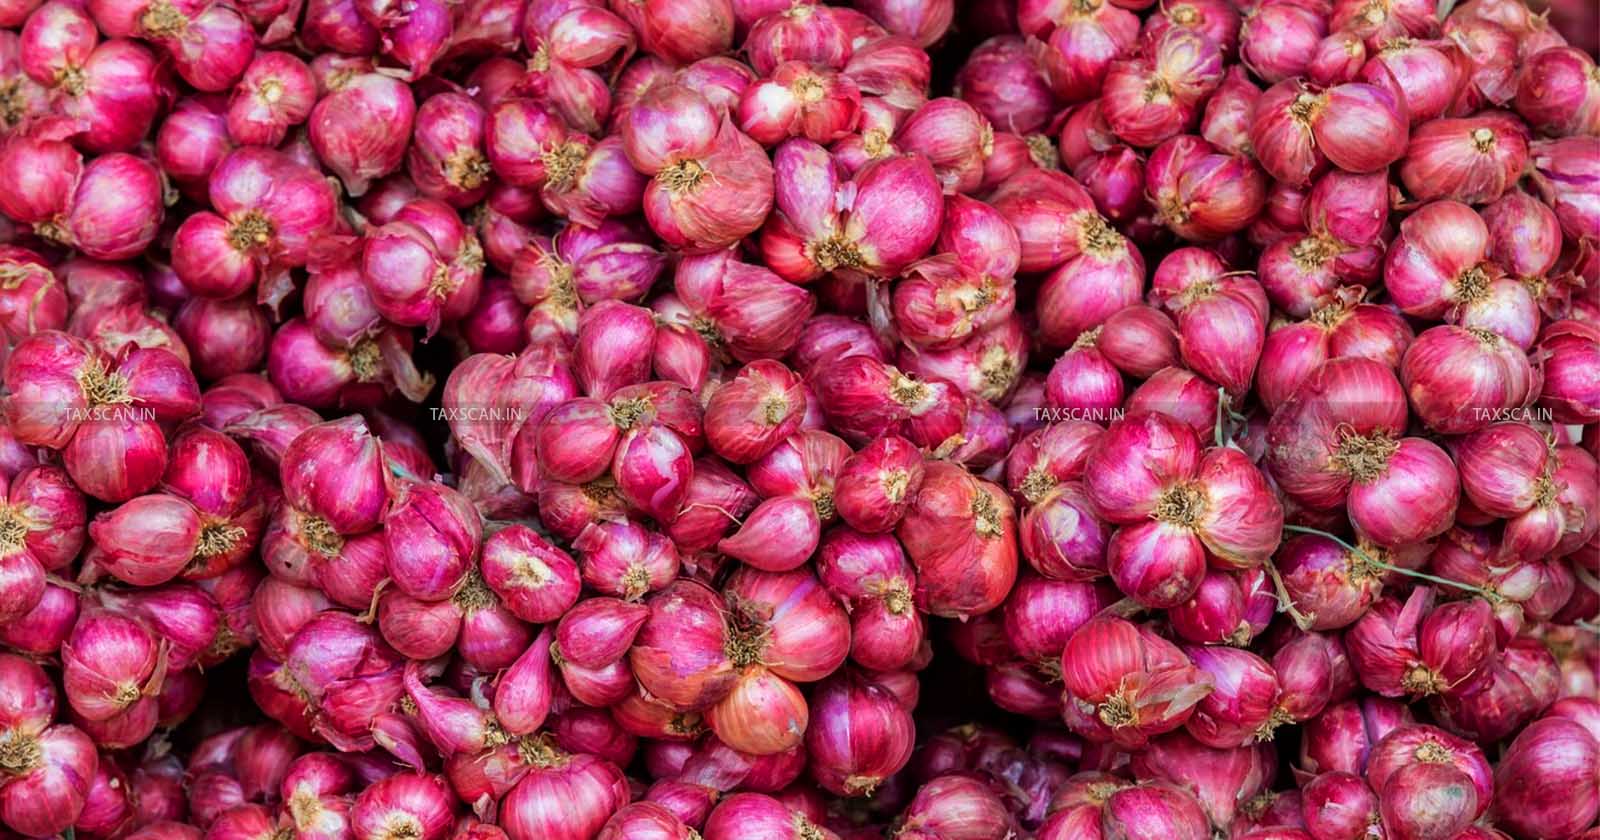 DGFT imposes Minimum Export Price - Onions -DGFT - taxscan